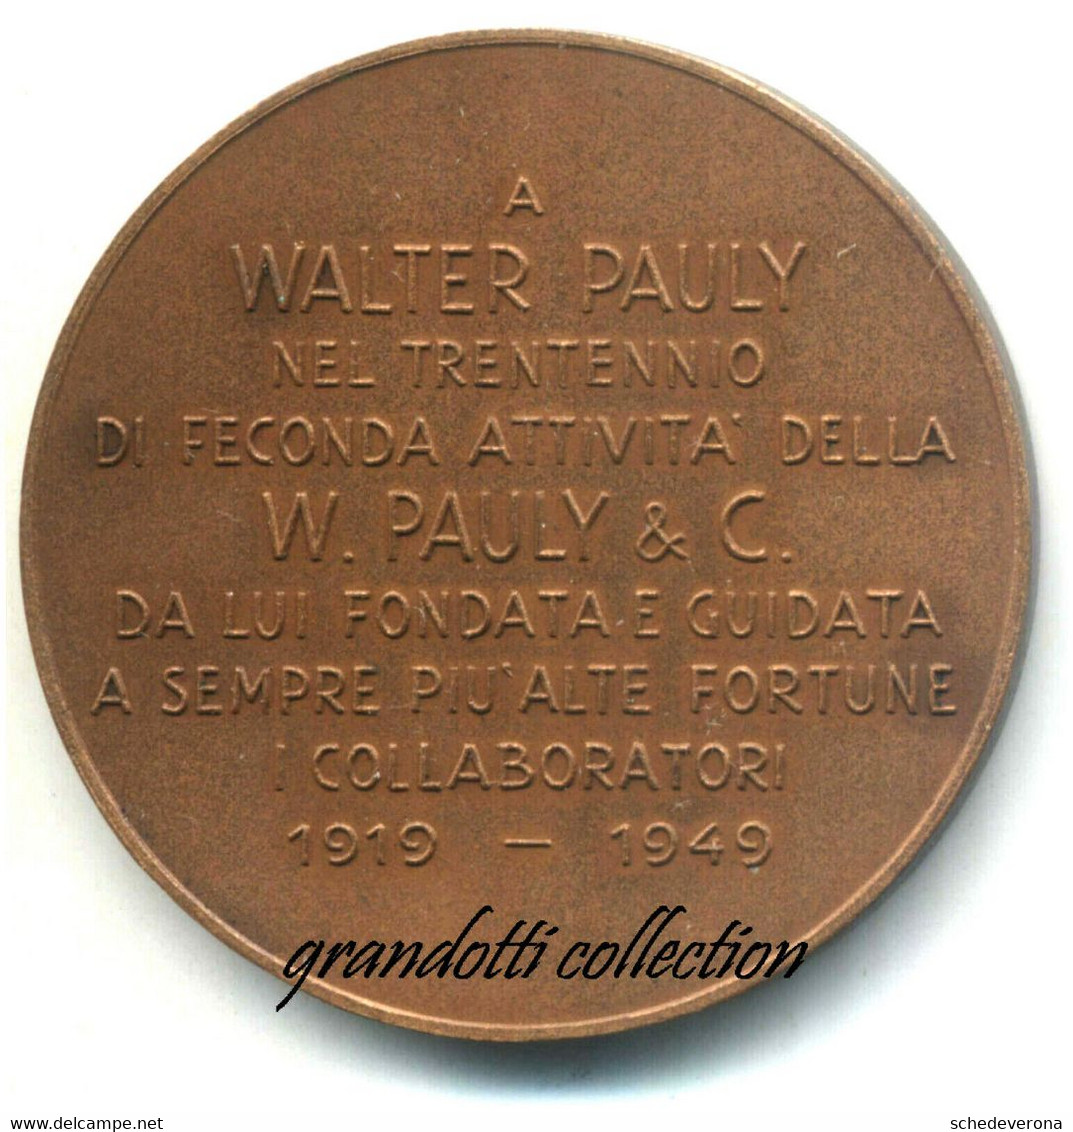 A WALTER PAULY I COLLABORATORI 30° MEDAGLIA 1949 EMILIO MONTI - Professionals/Firms